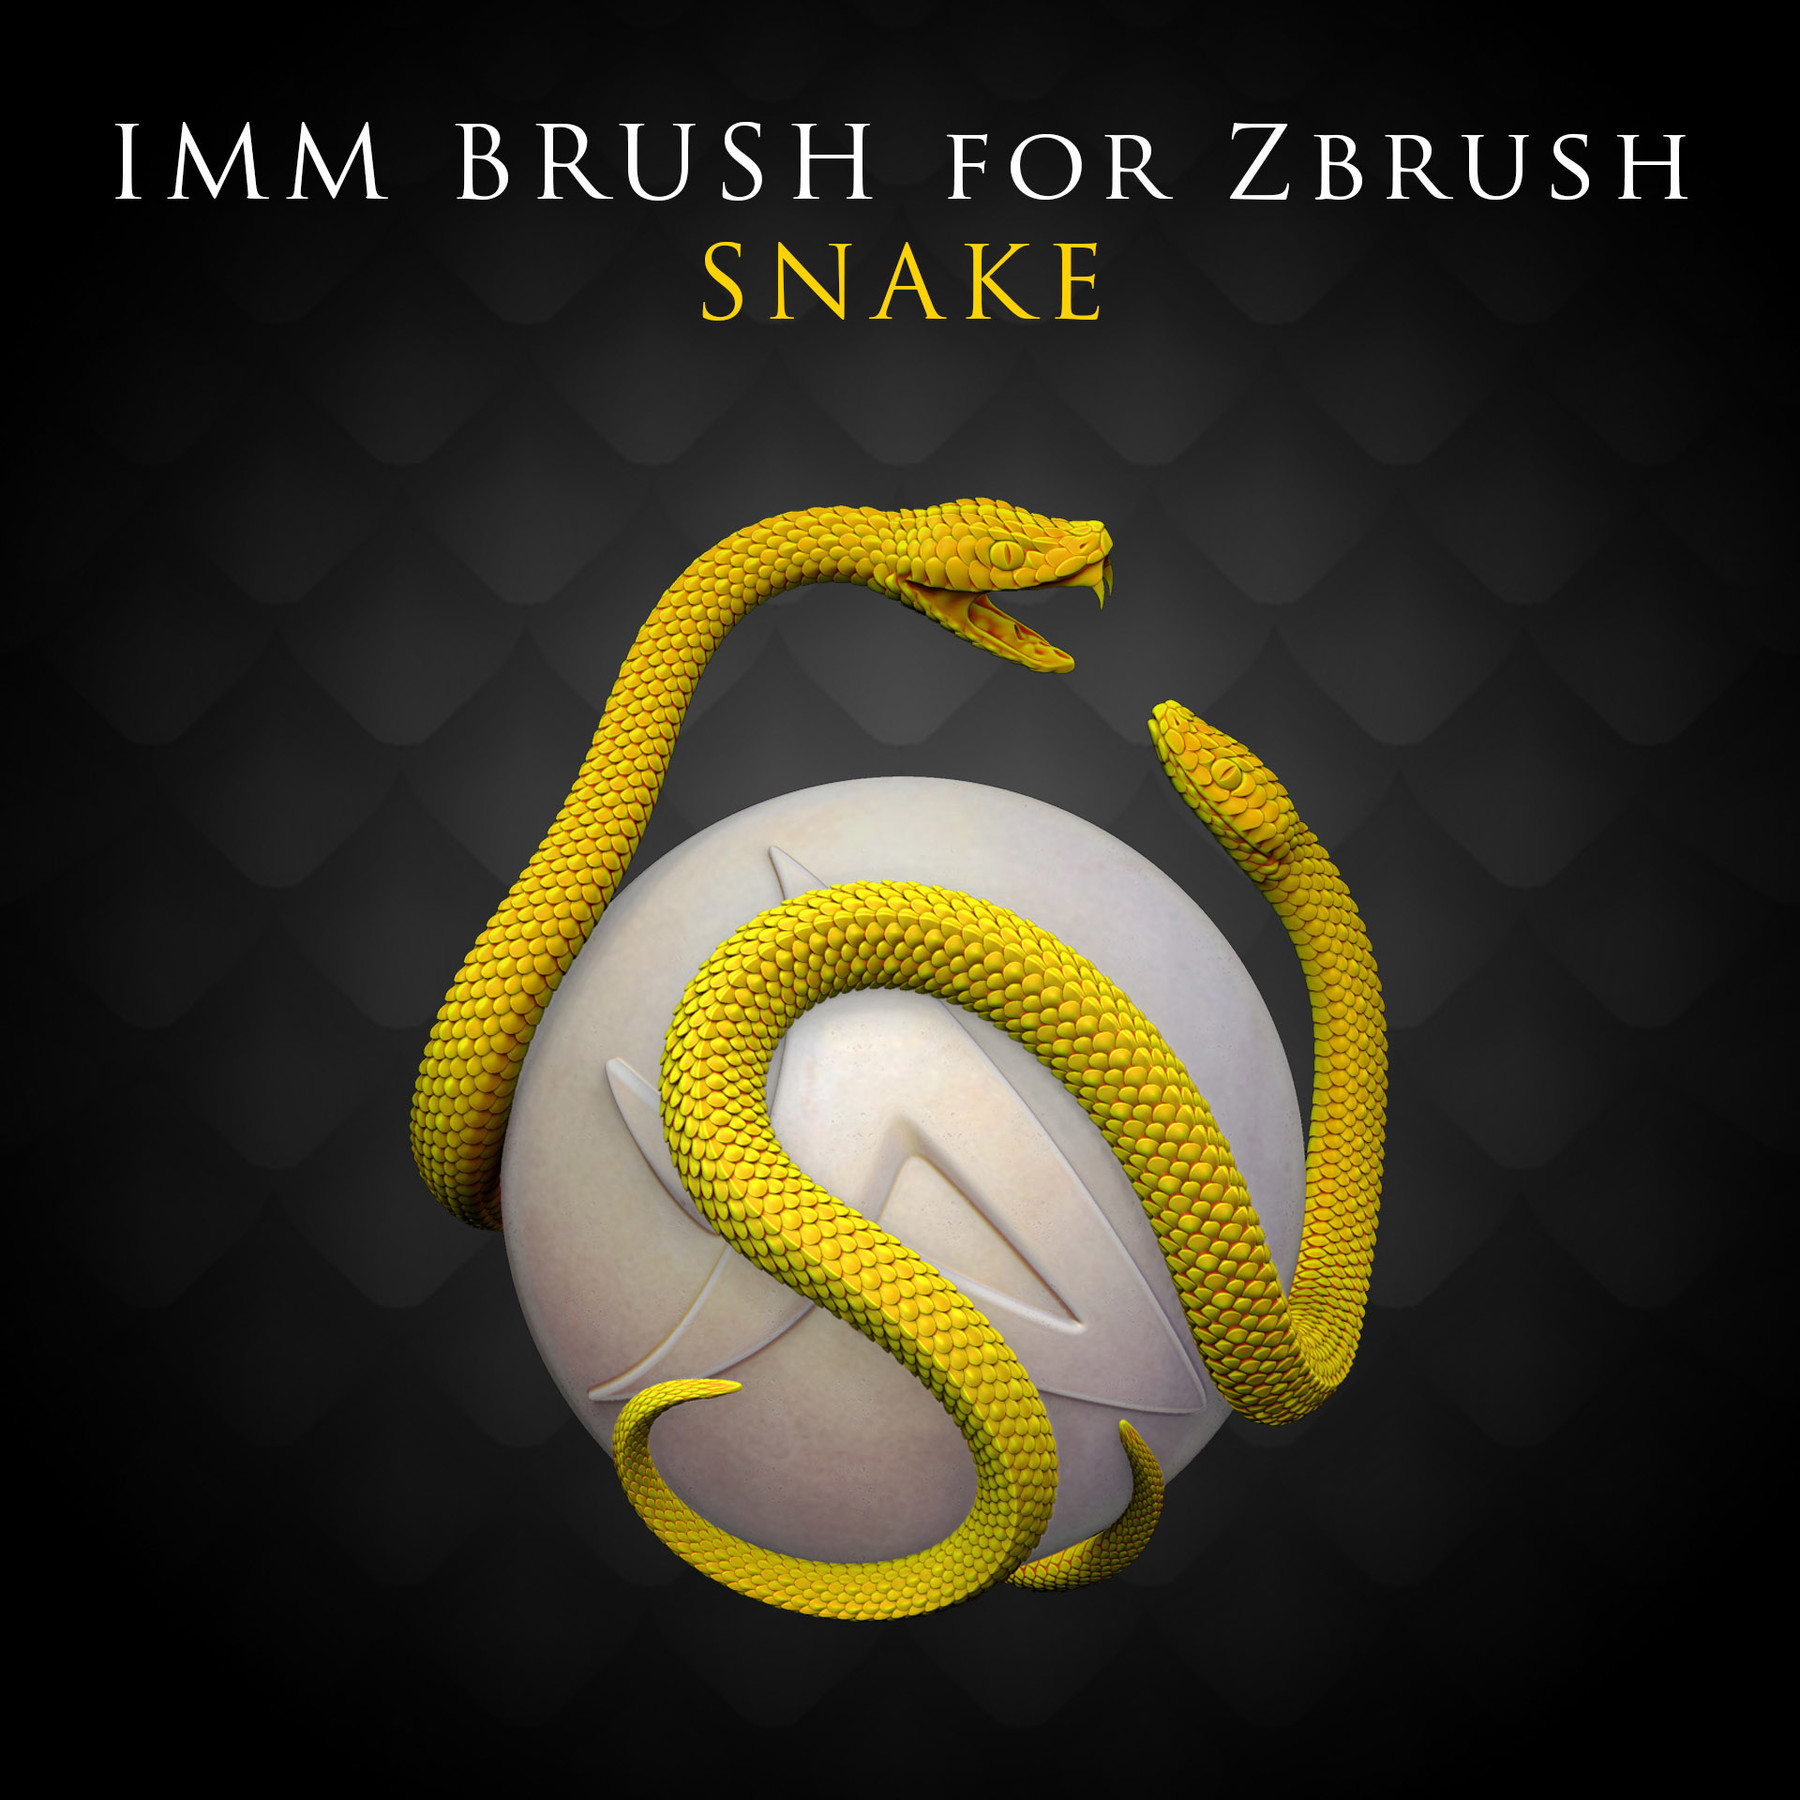 snake brushes for zbrush